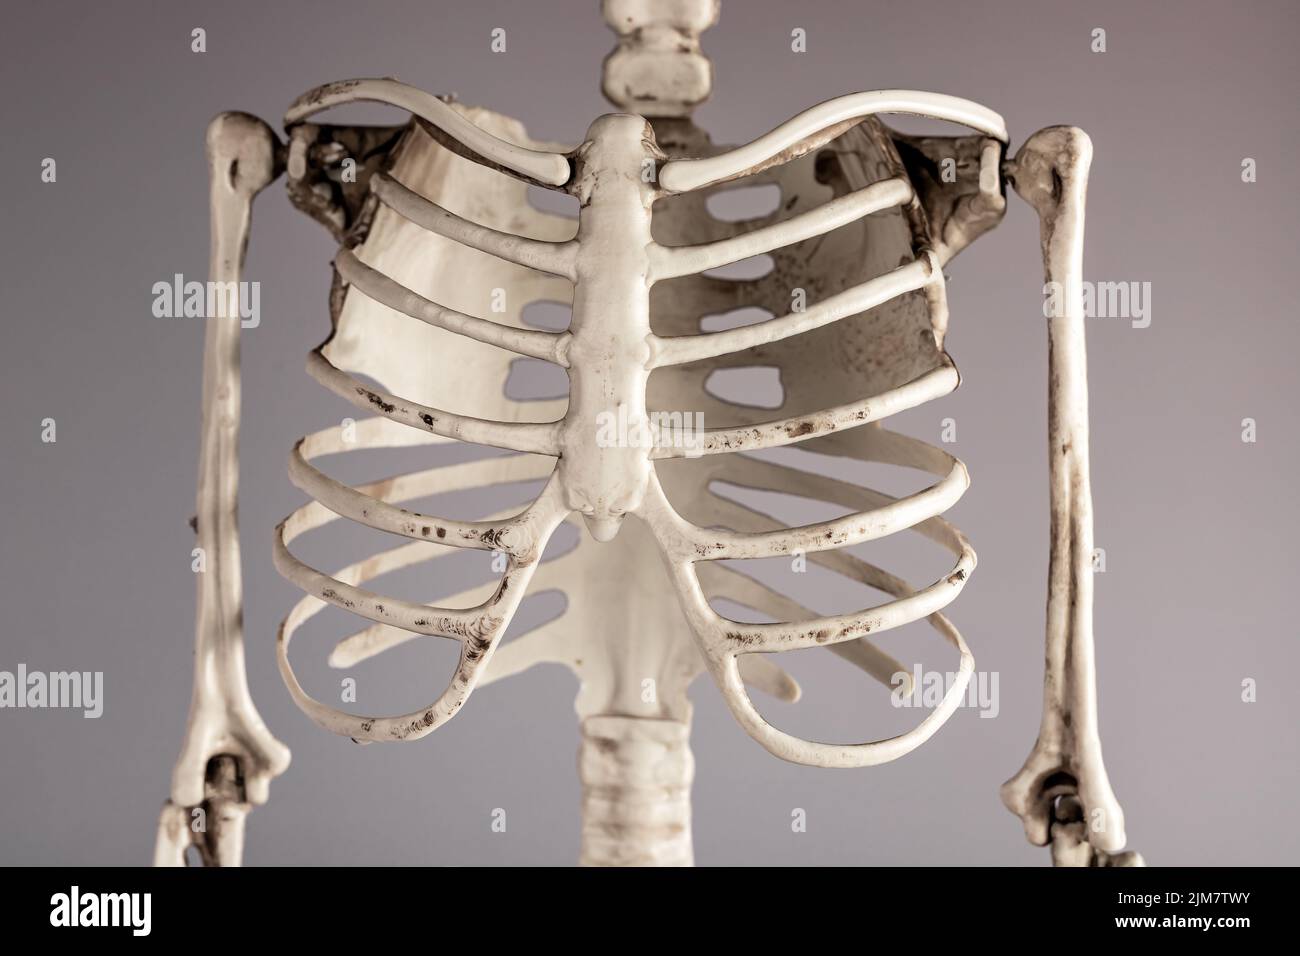 Brustknochen des menschlichen Skeletts. Brustkorb, Wirbelsäule. Anatomie des Skelettsystems, Körperstruktur, medizinisches Bildungskonzept. Hochwertige Fotos Stockfoto